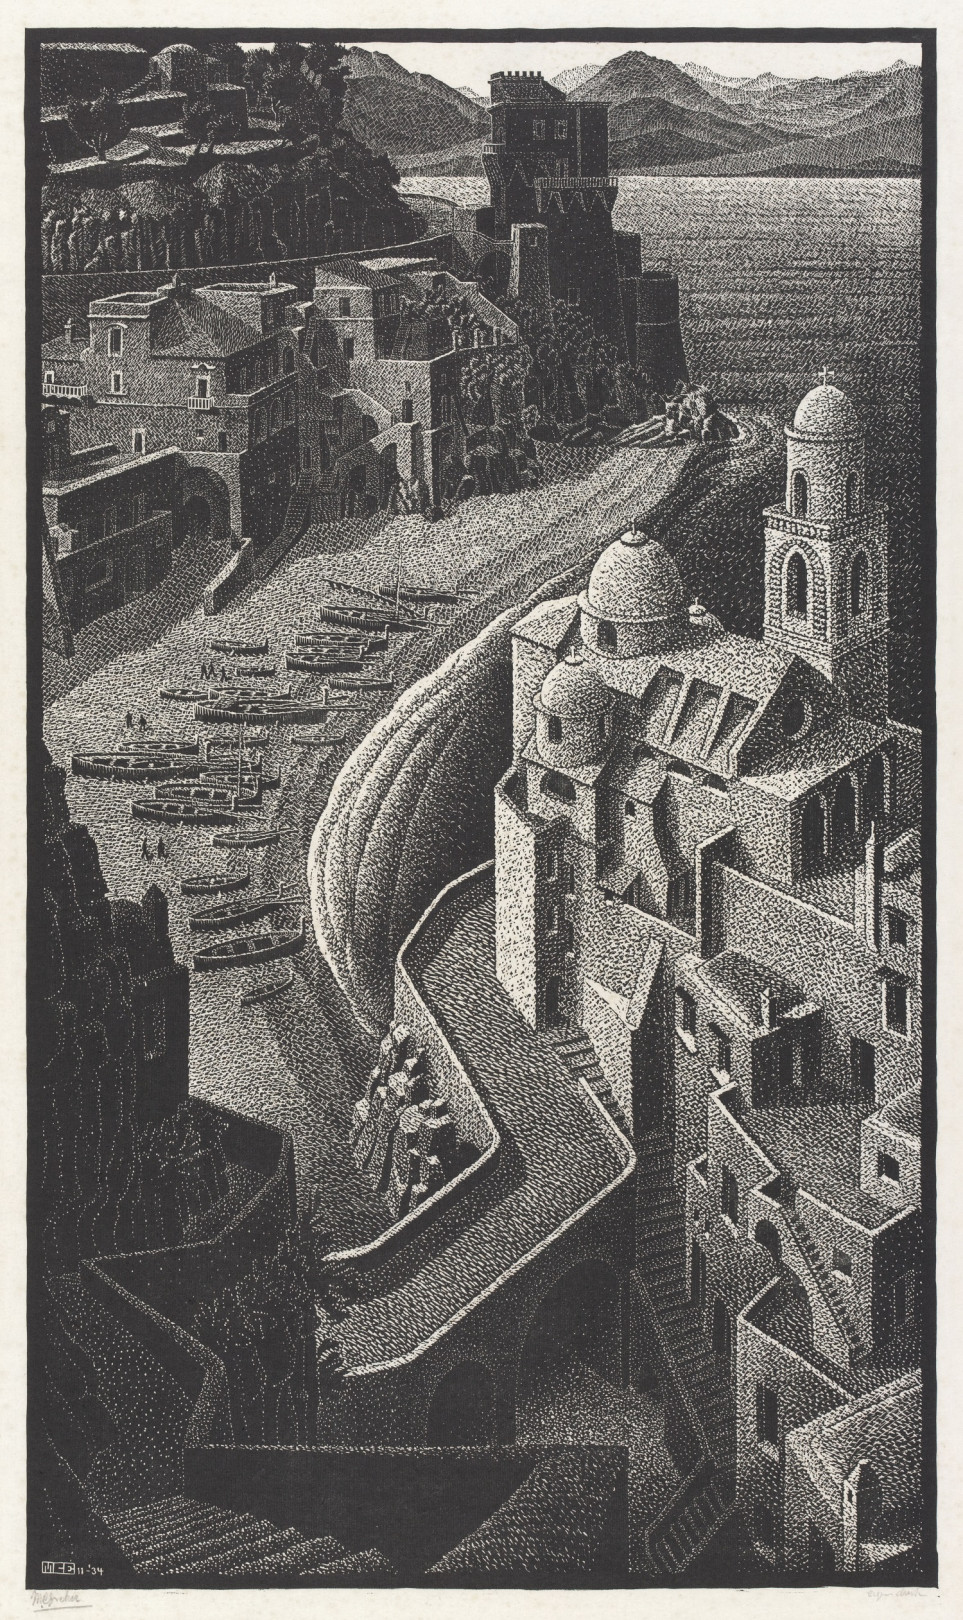 《アマルフィ海岸》 1934年 All M.C. Escher works